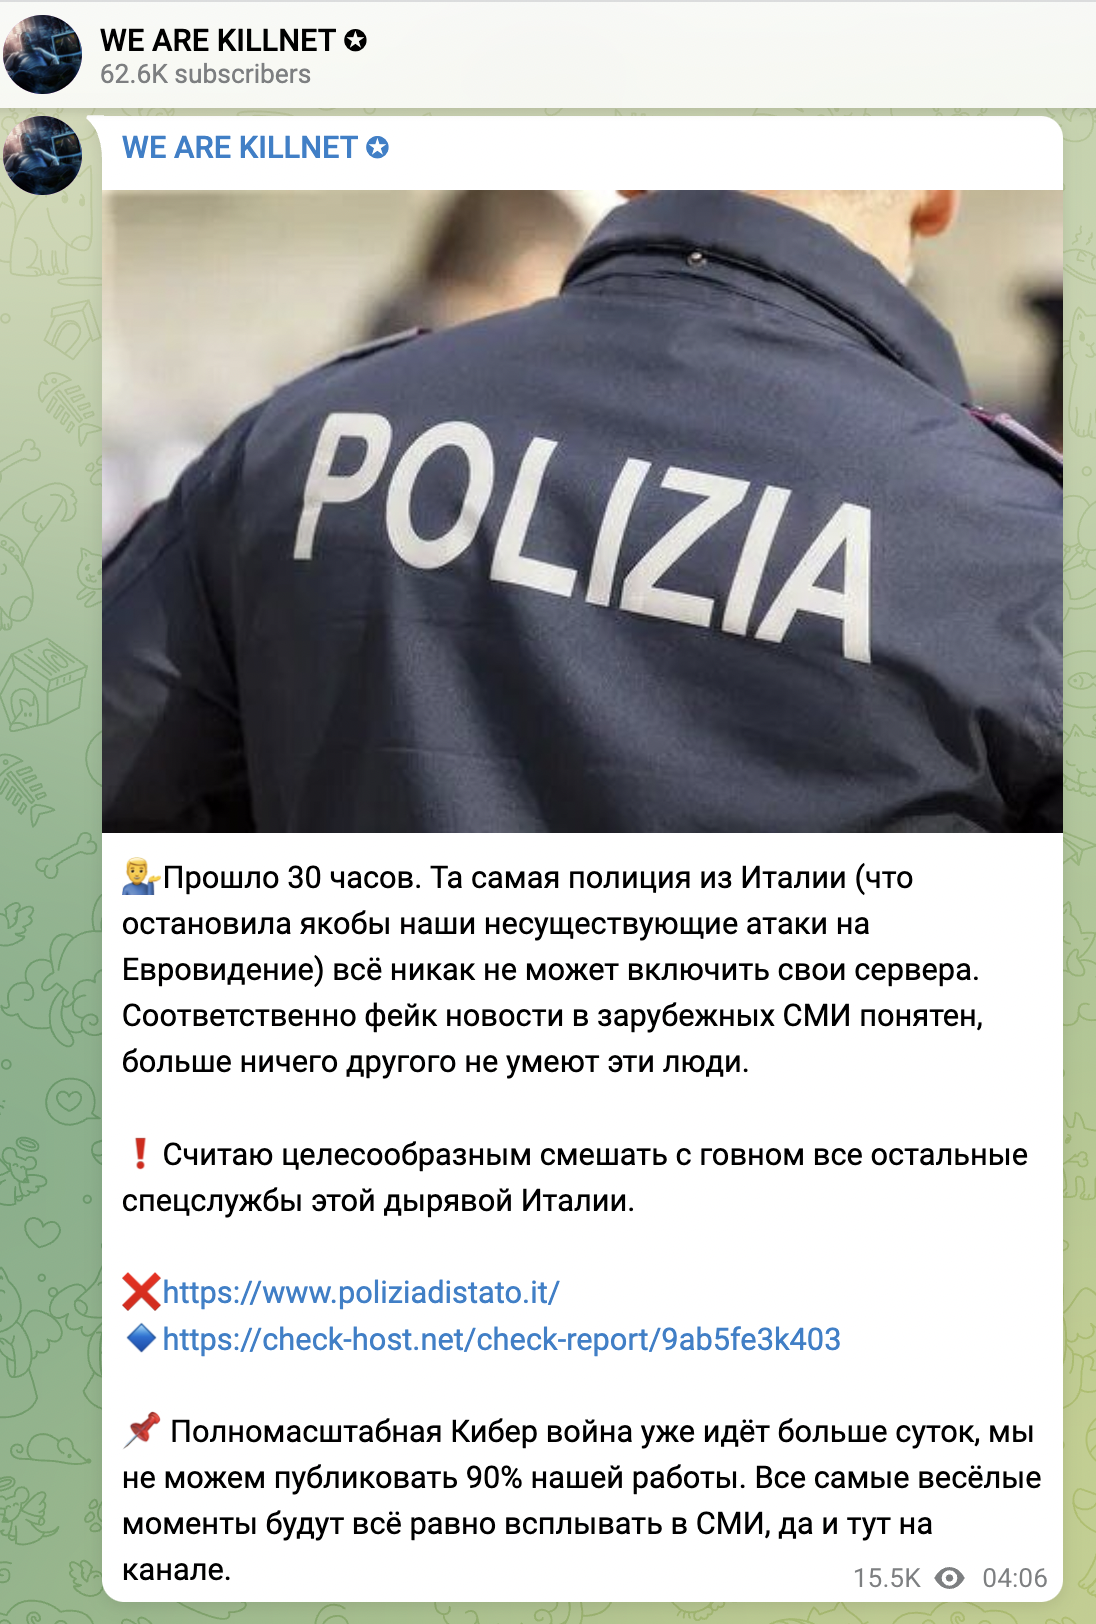 Killnet polizia italian 